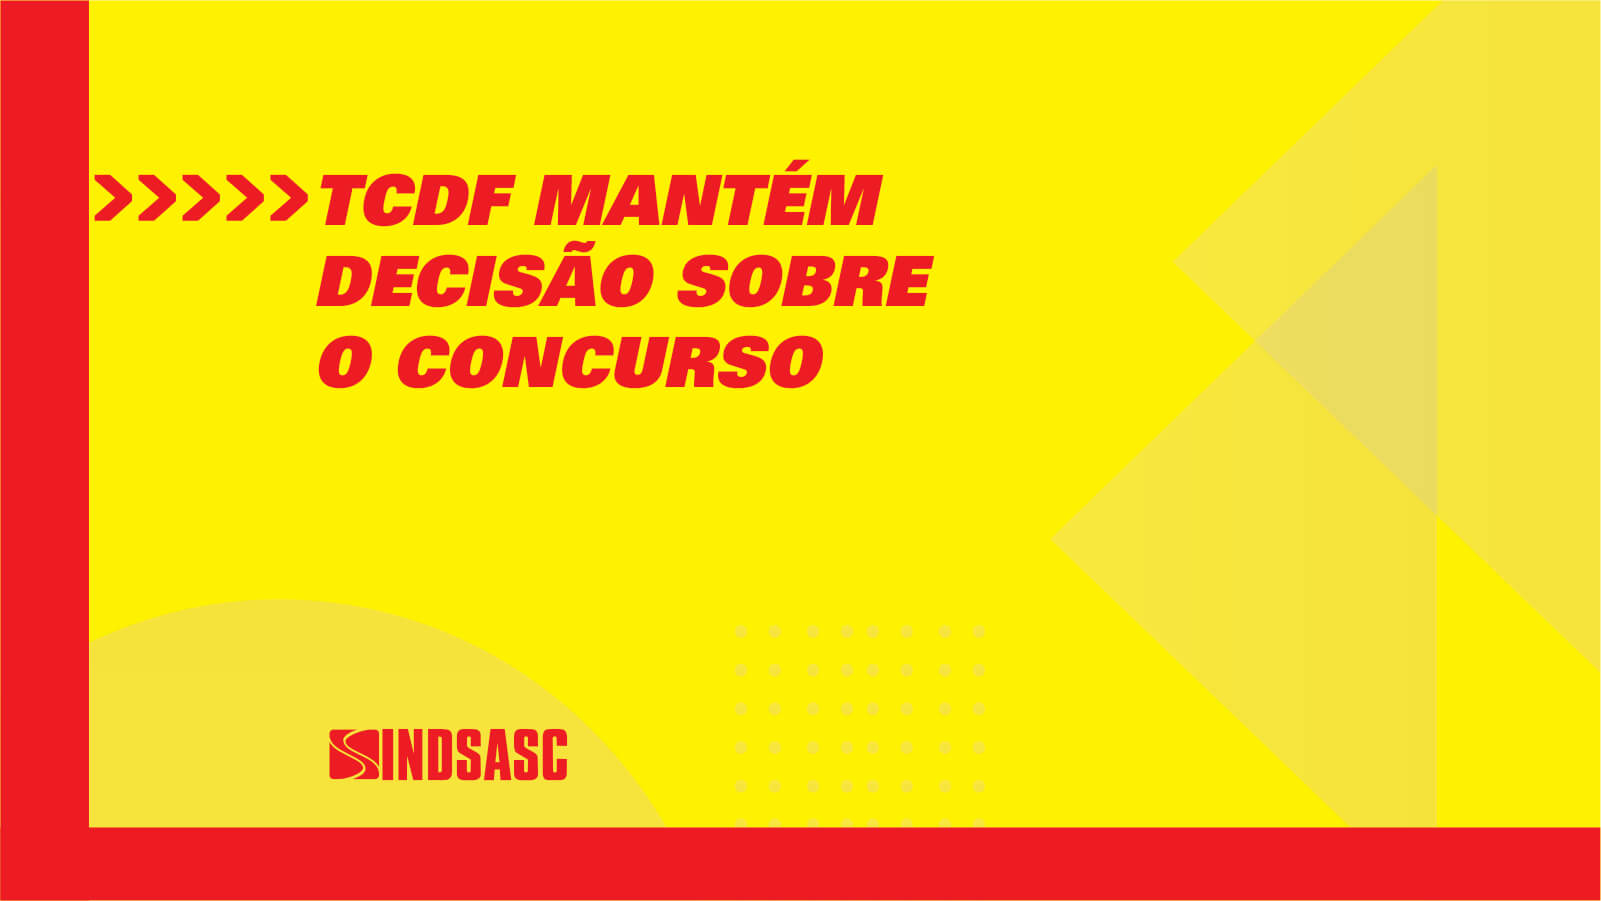 TCDF MANTÉM DECISÃO SOBRE O CONCURSO